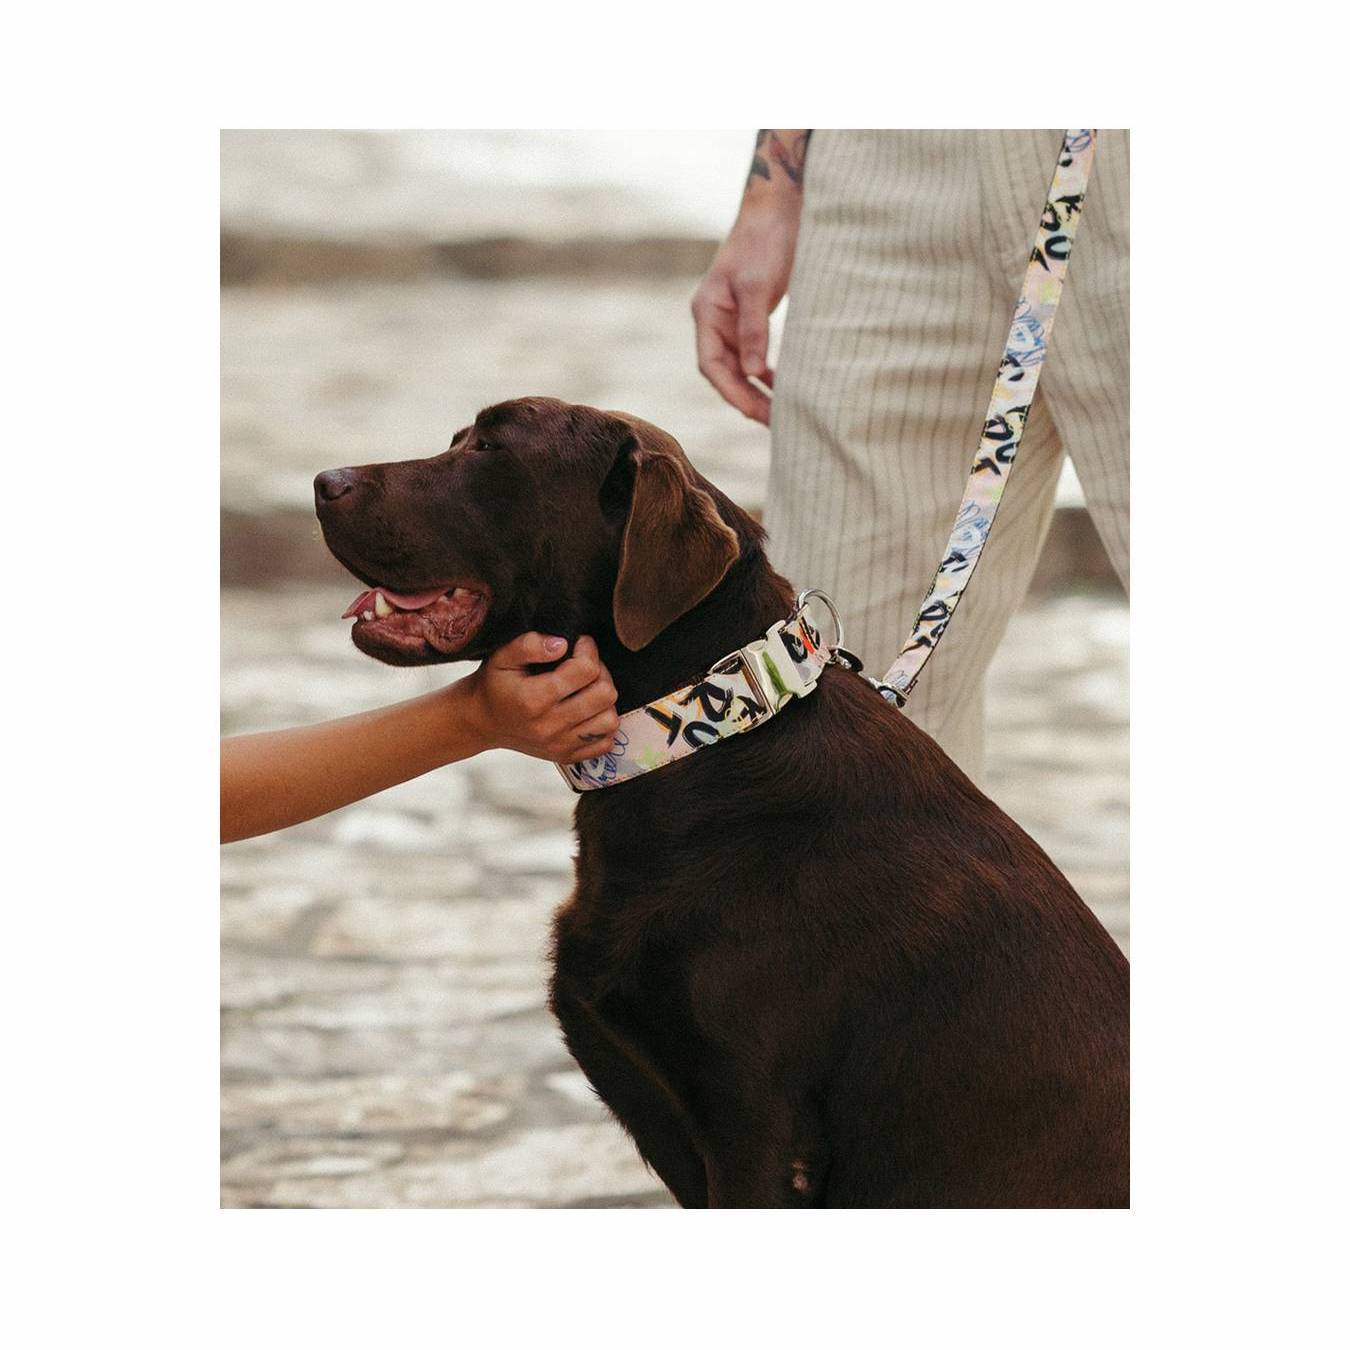 アートな壁画風プリントの首輪を着用している茶色い大型犬